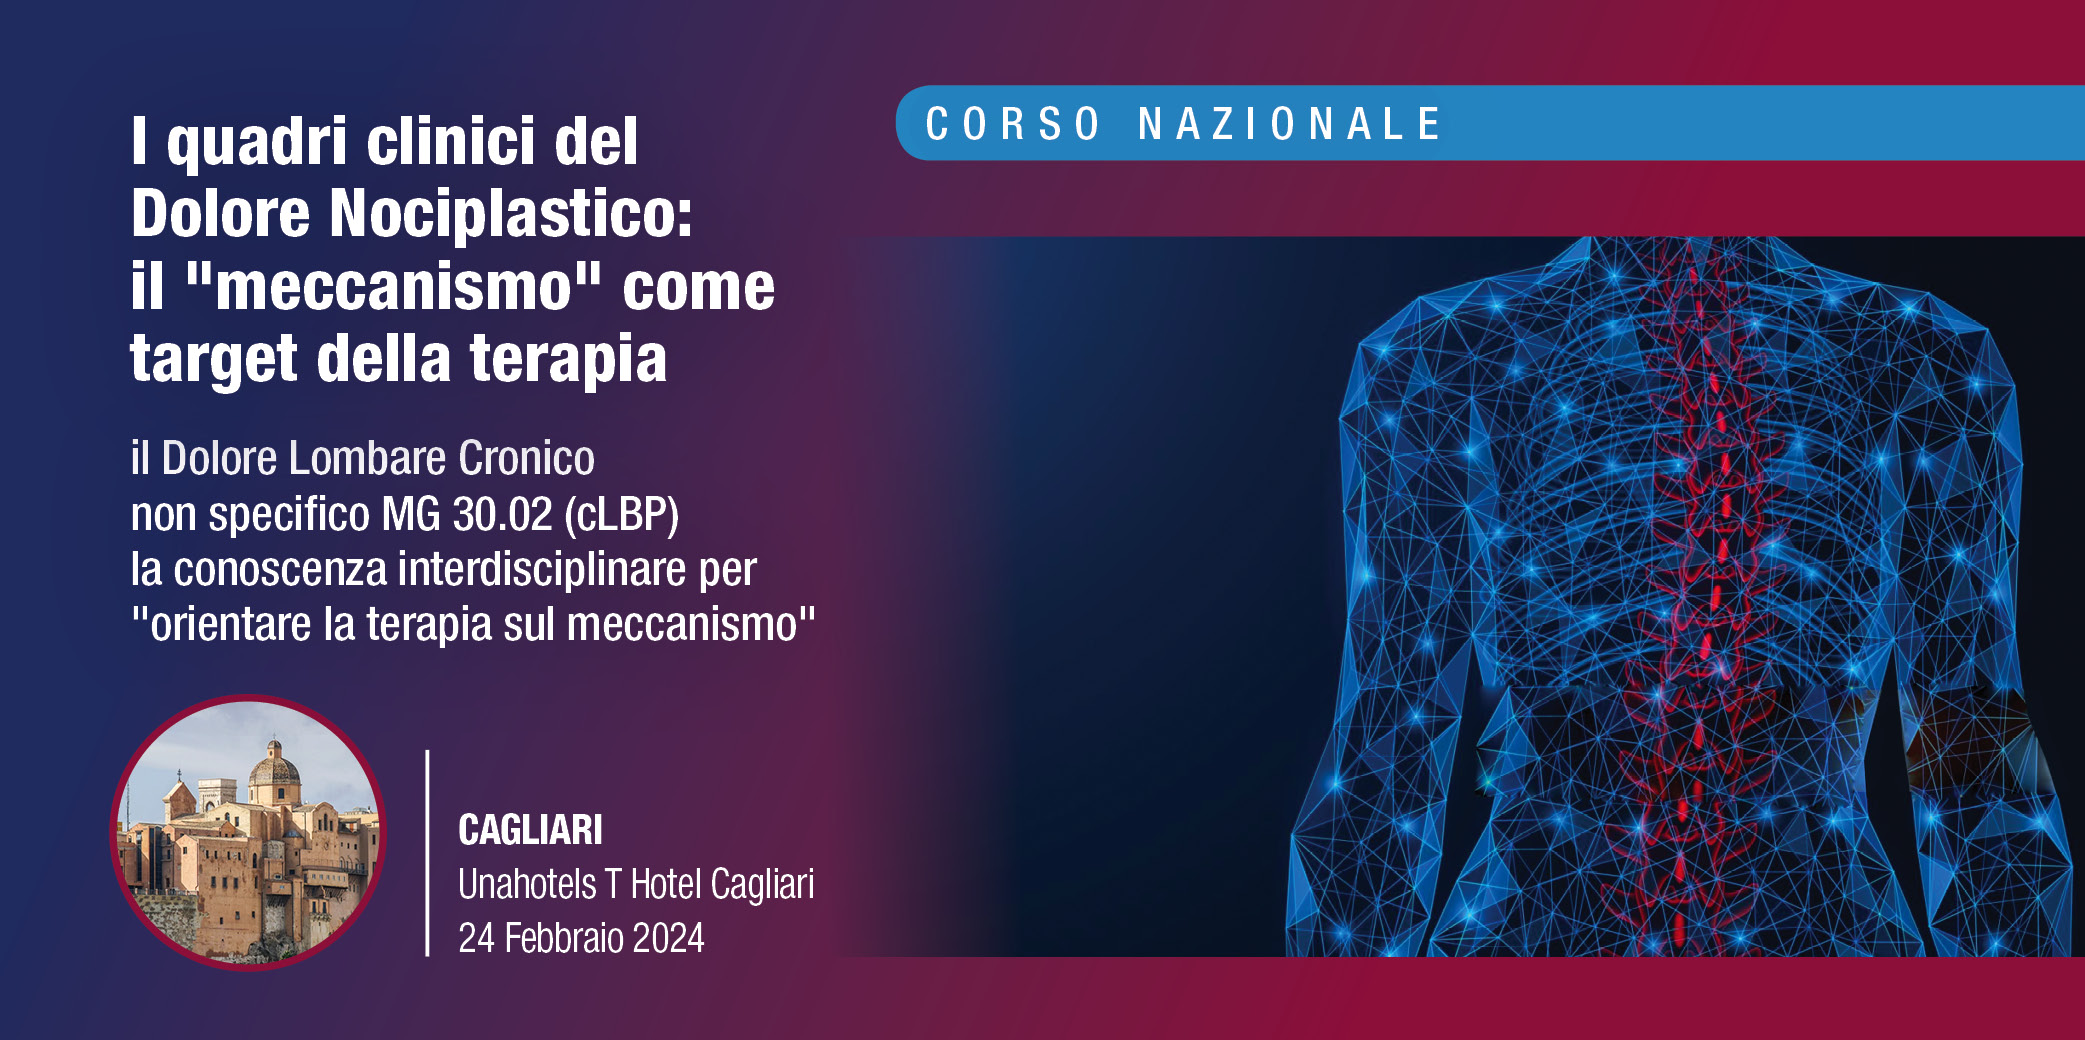 I quadri clinici del Dolore Nociplastico: il “meccanismo” come target della terapia – Cagliari, 24 Febbraio 2024